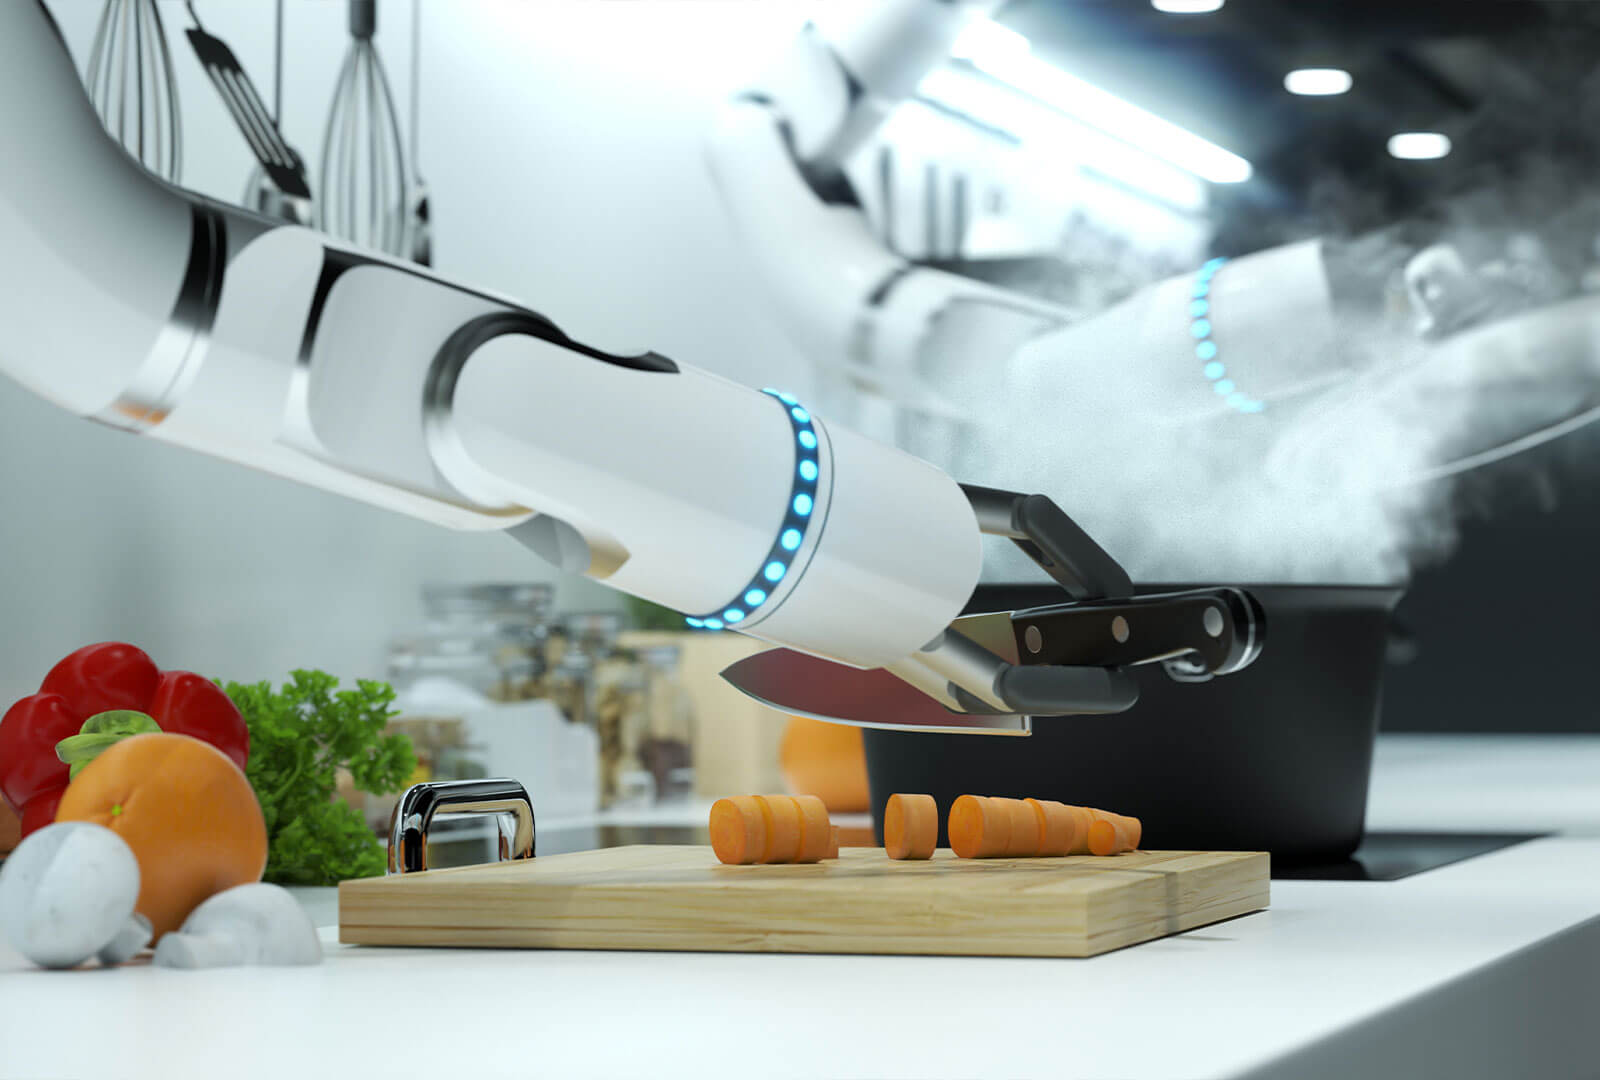 A robotic chef preparing food